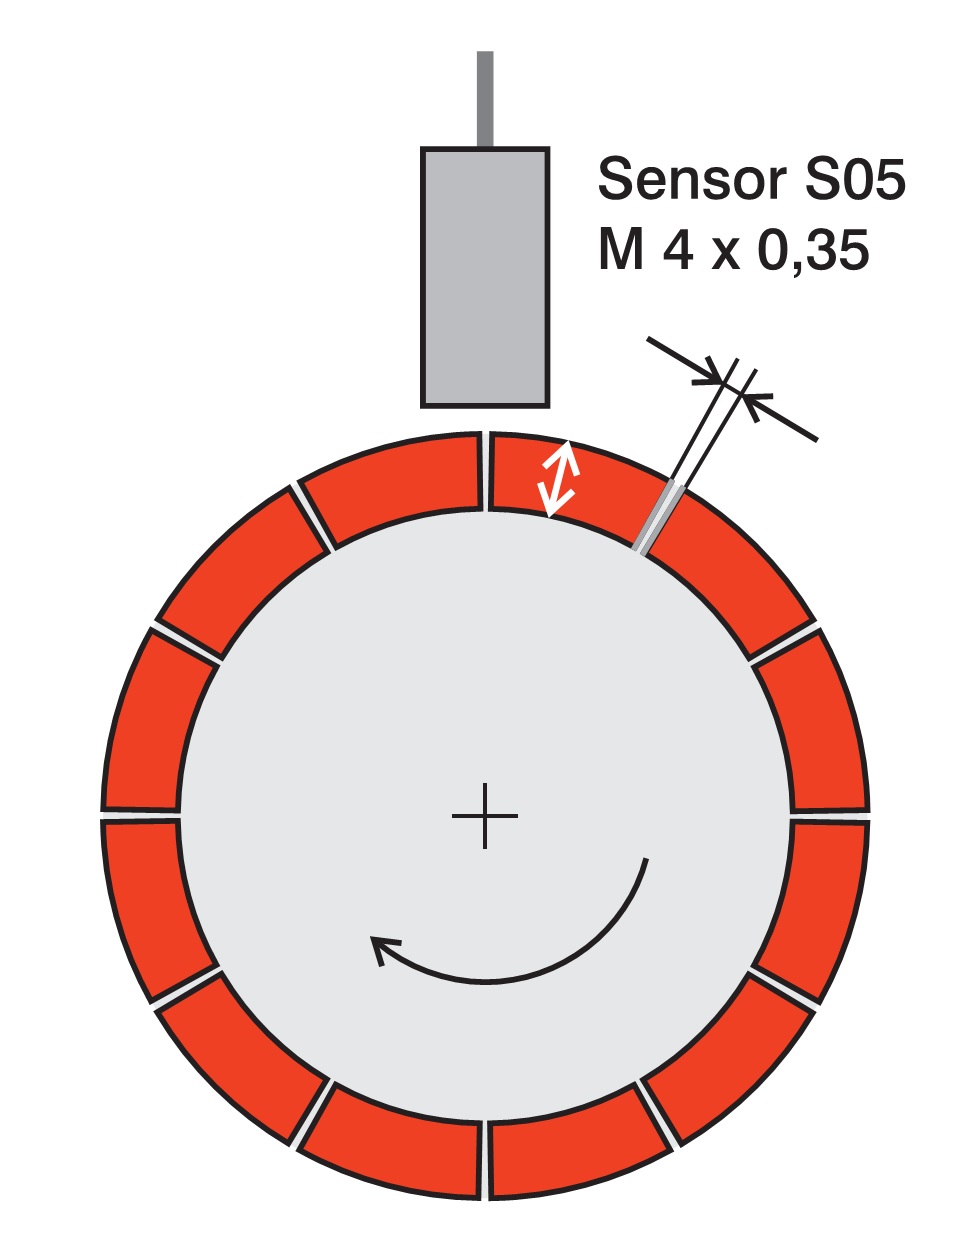 电涡流位移传感器用于测量电机间隙